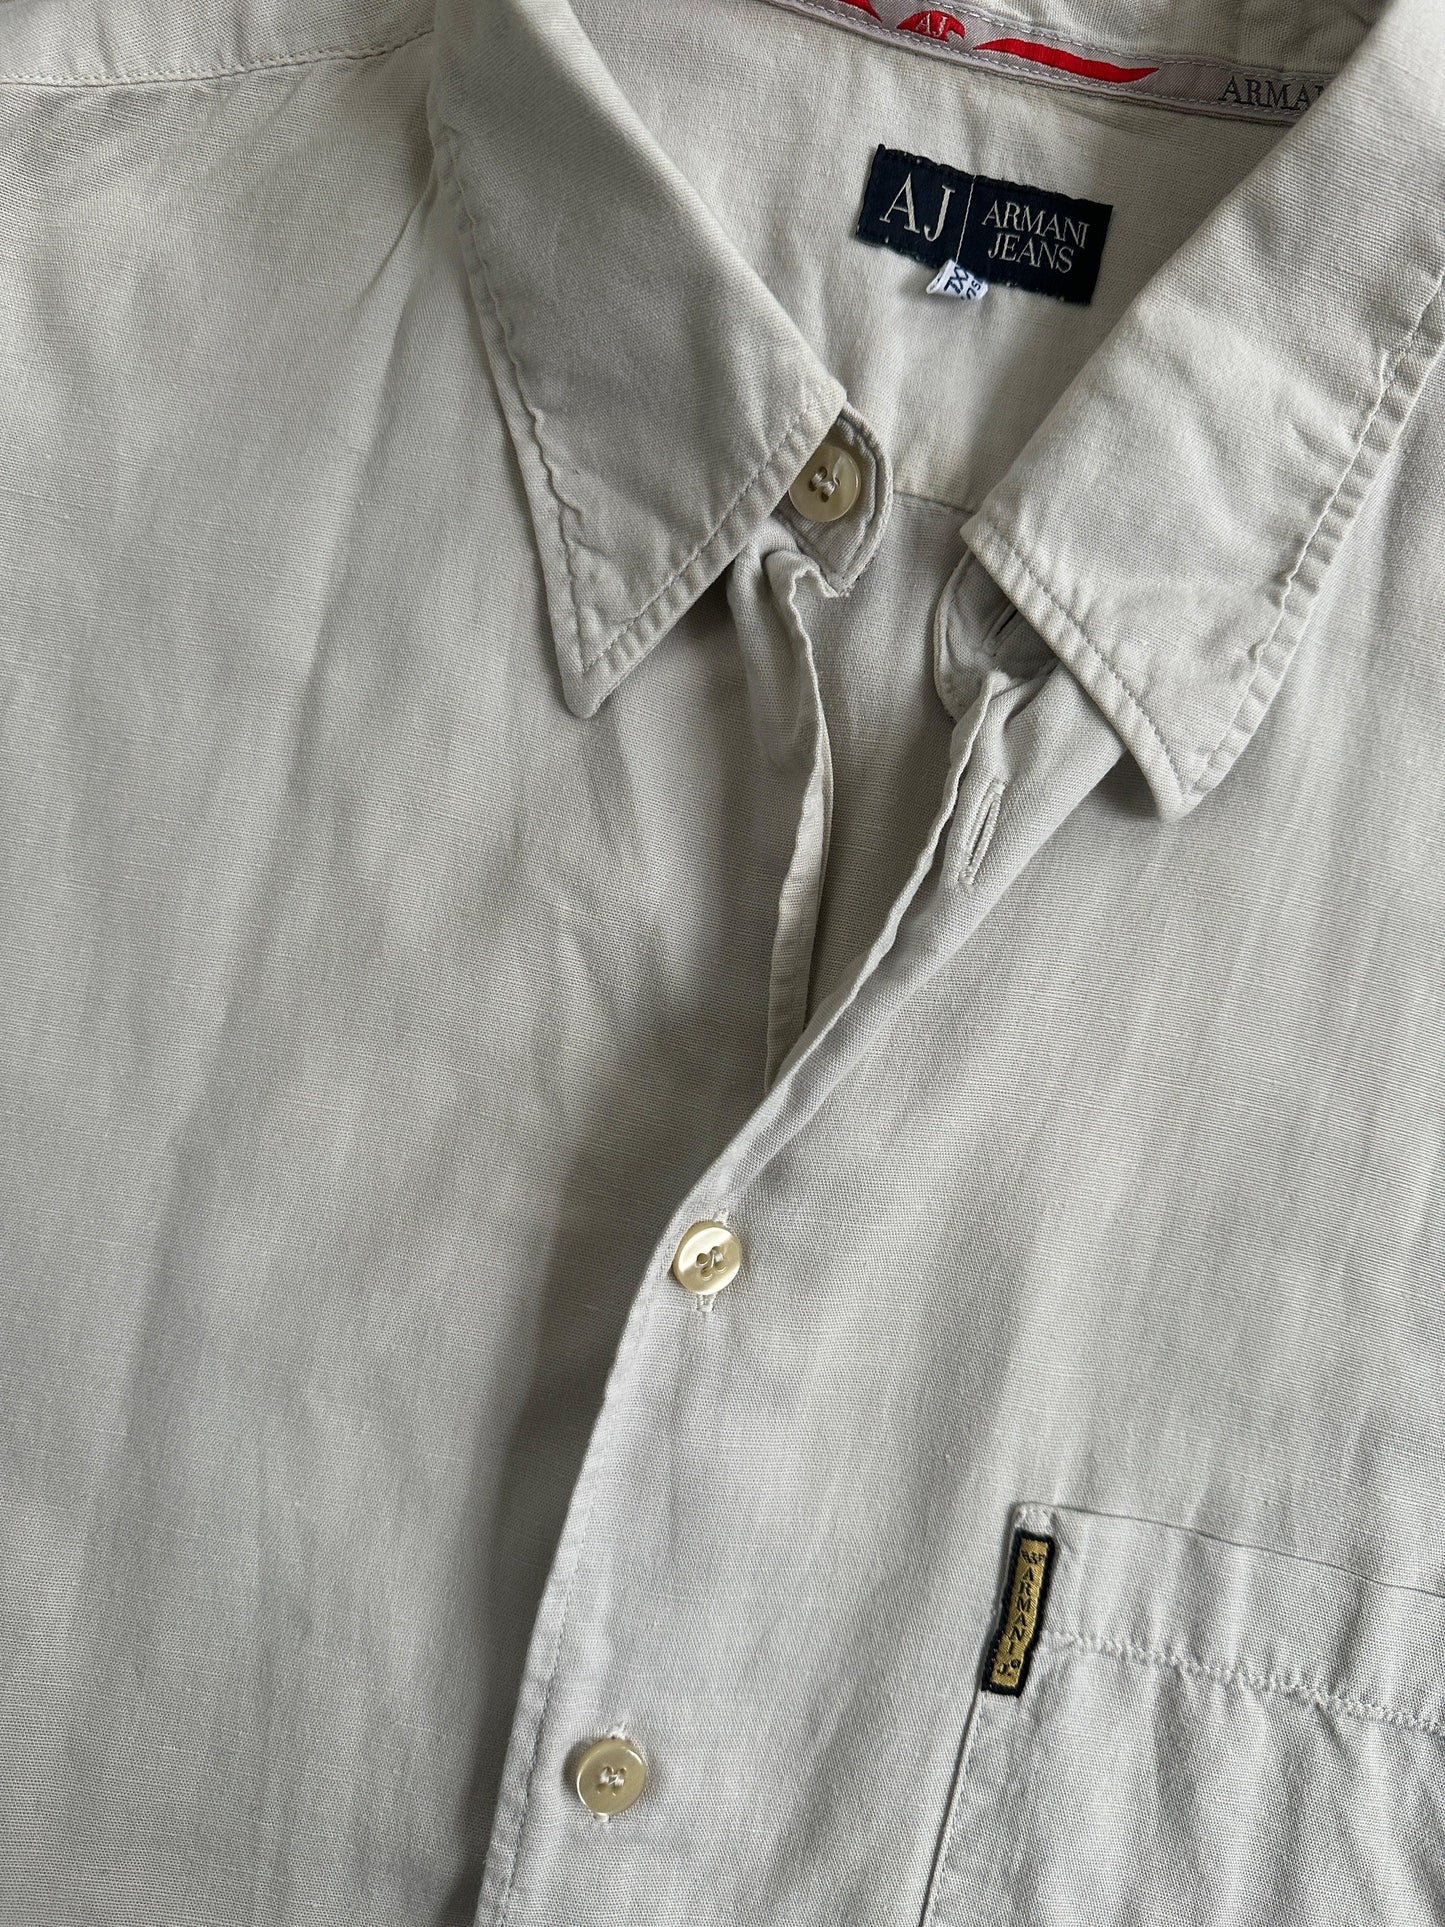 Armani Jeans Cotton Linen Logo Shirt - XL - Known Source